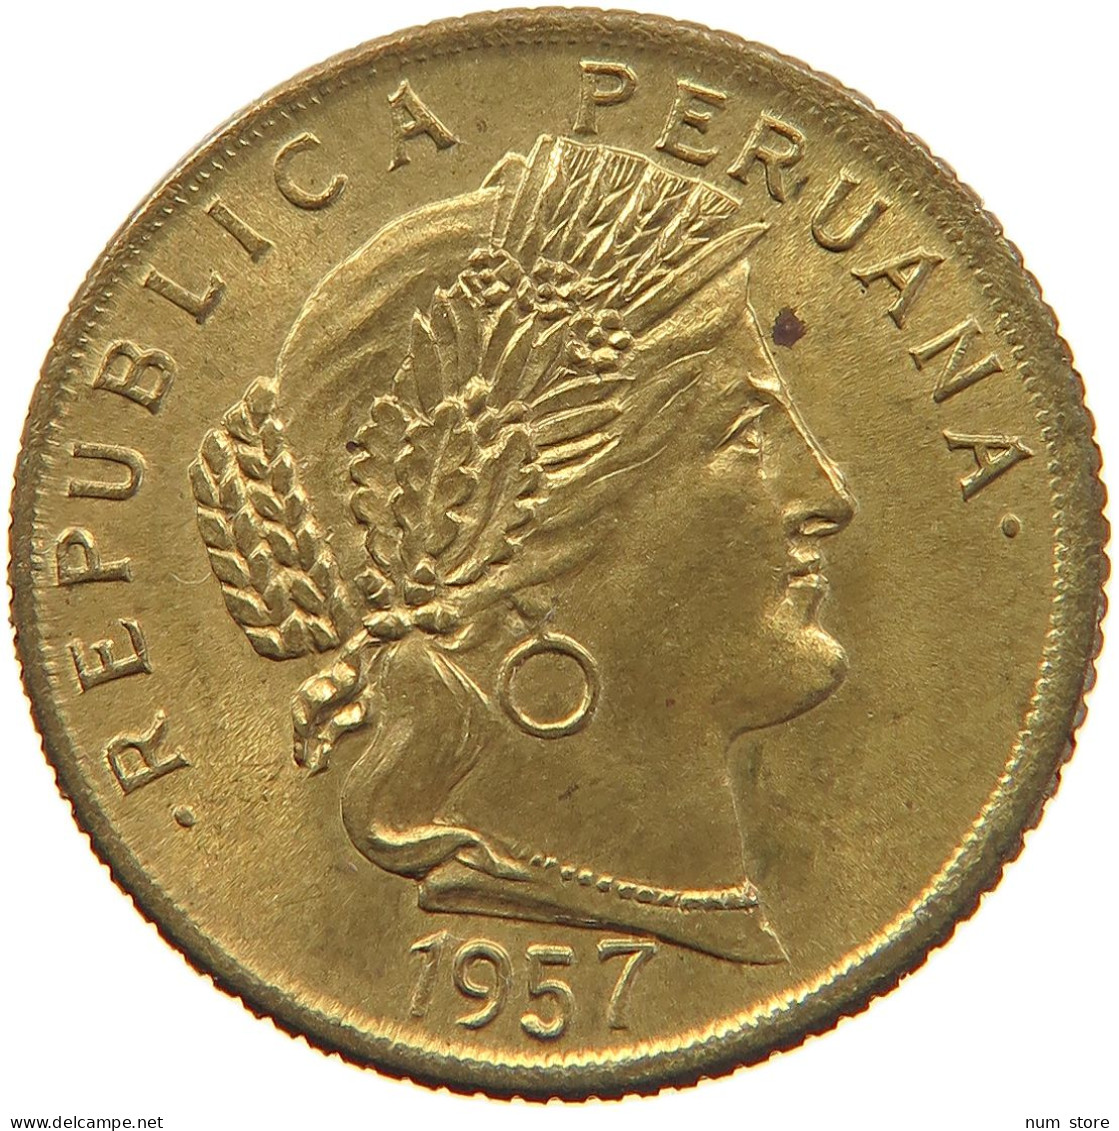 PERU 10 CENTAVOS 1957 UNC #t030 0151 - Peru